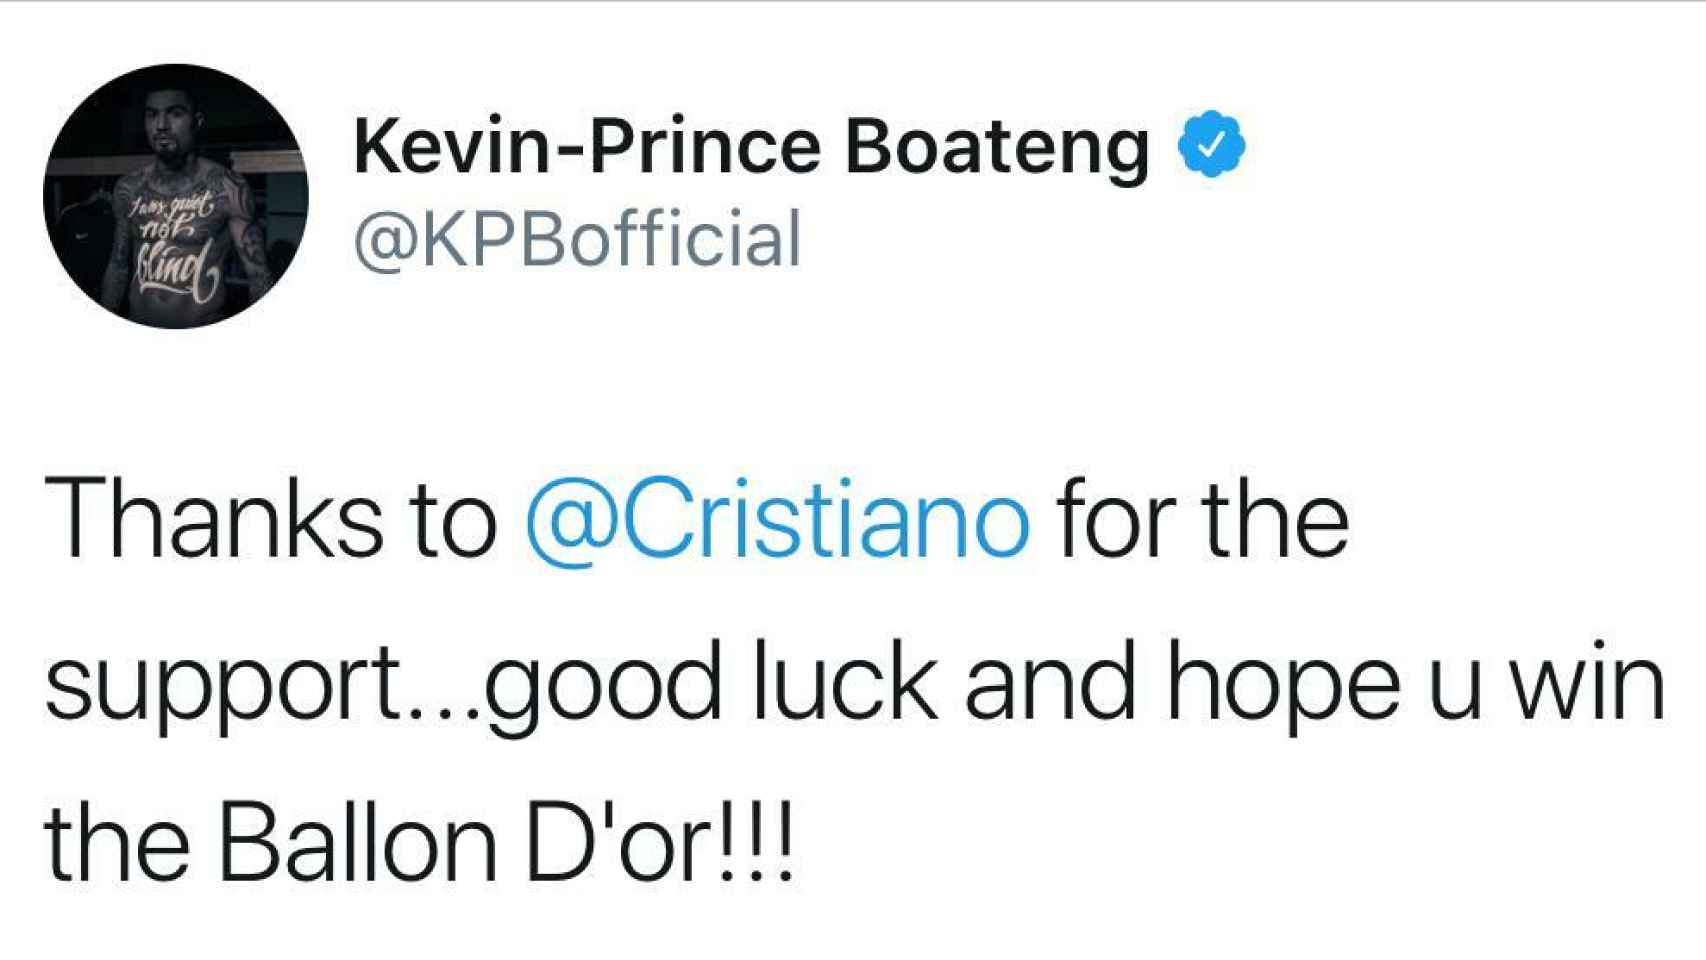 Kevin Prince Boateng agradece a Cristiano el apoyo por Twitter